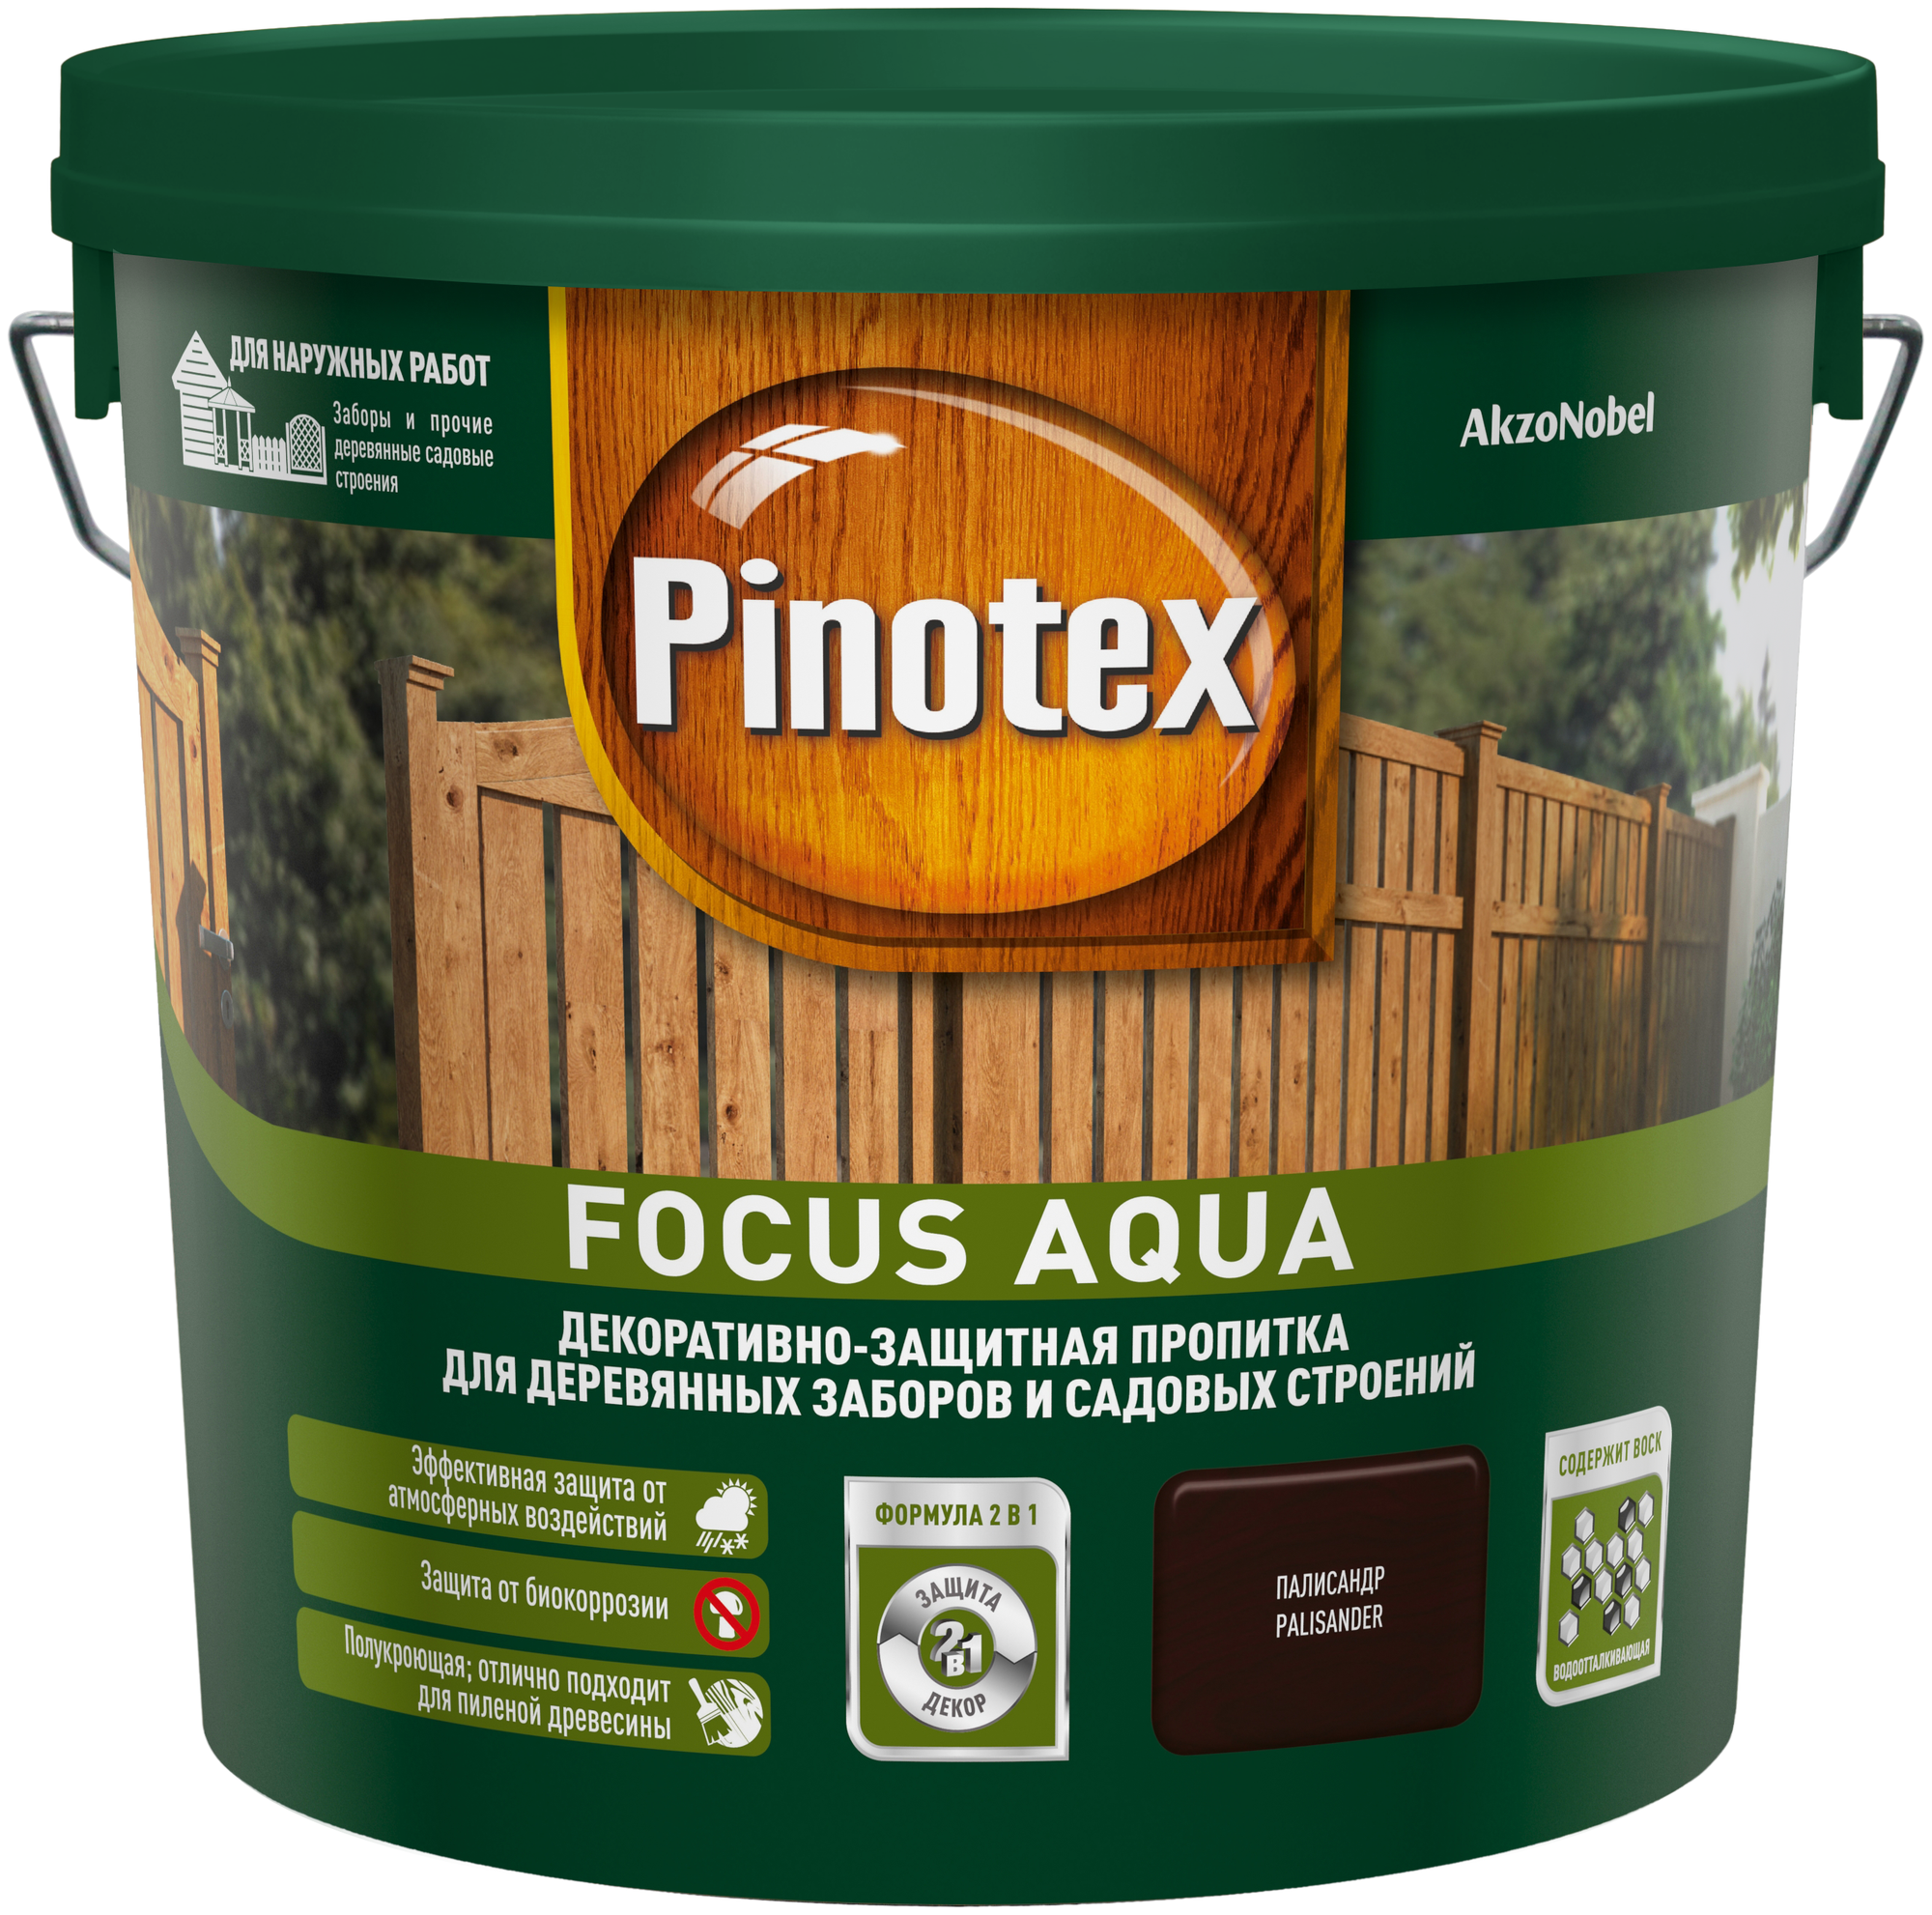 Пропитка декоративная для защиты древесины Pinotex Focus Aqua полисандр 5 л.